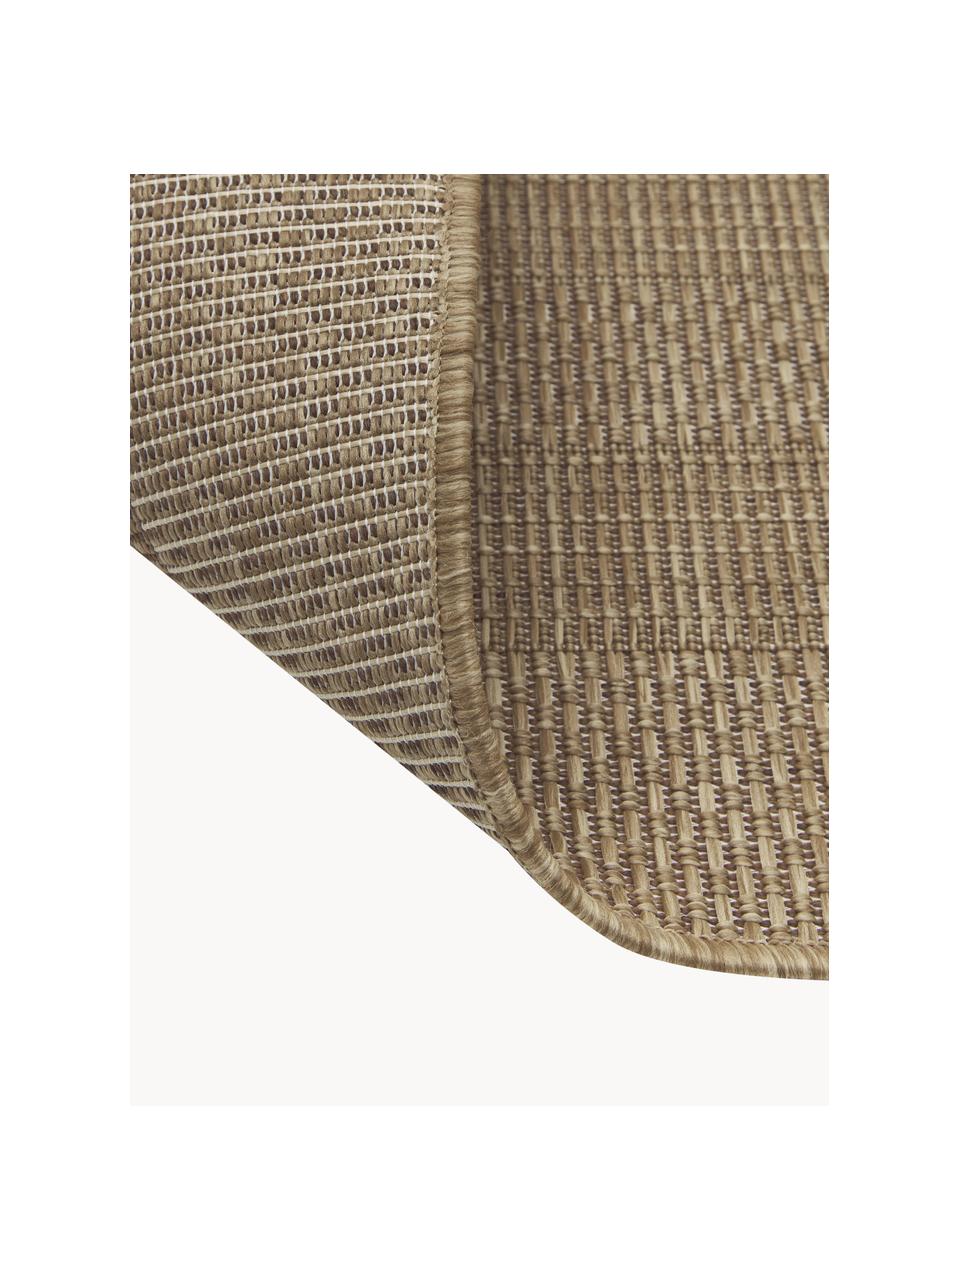 Interiérový/exteriérový koberec Liza, 100 % polypropylen, Hnědá, Š 160 cm, D 220 cm (velikost M)